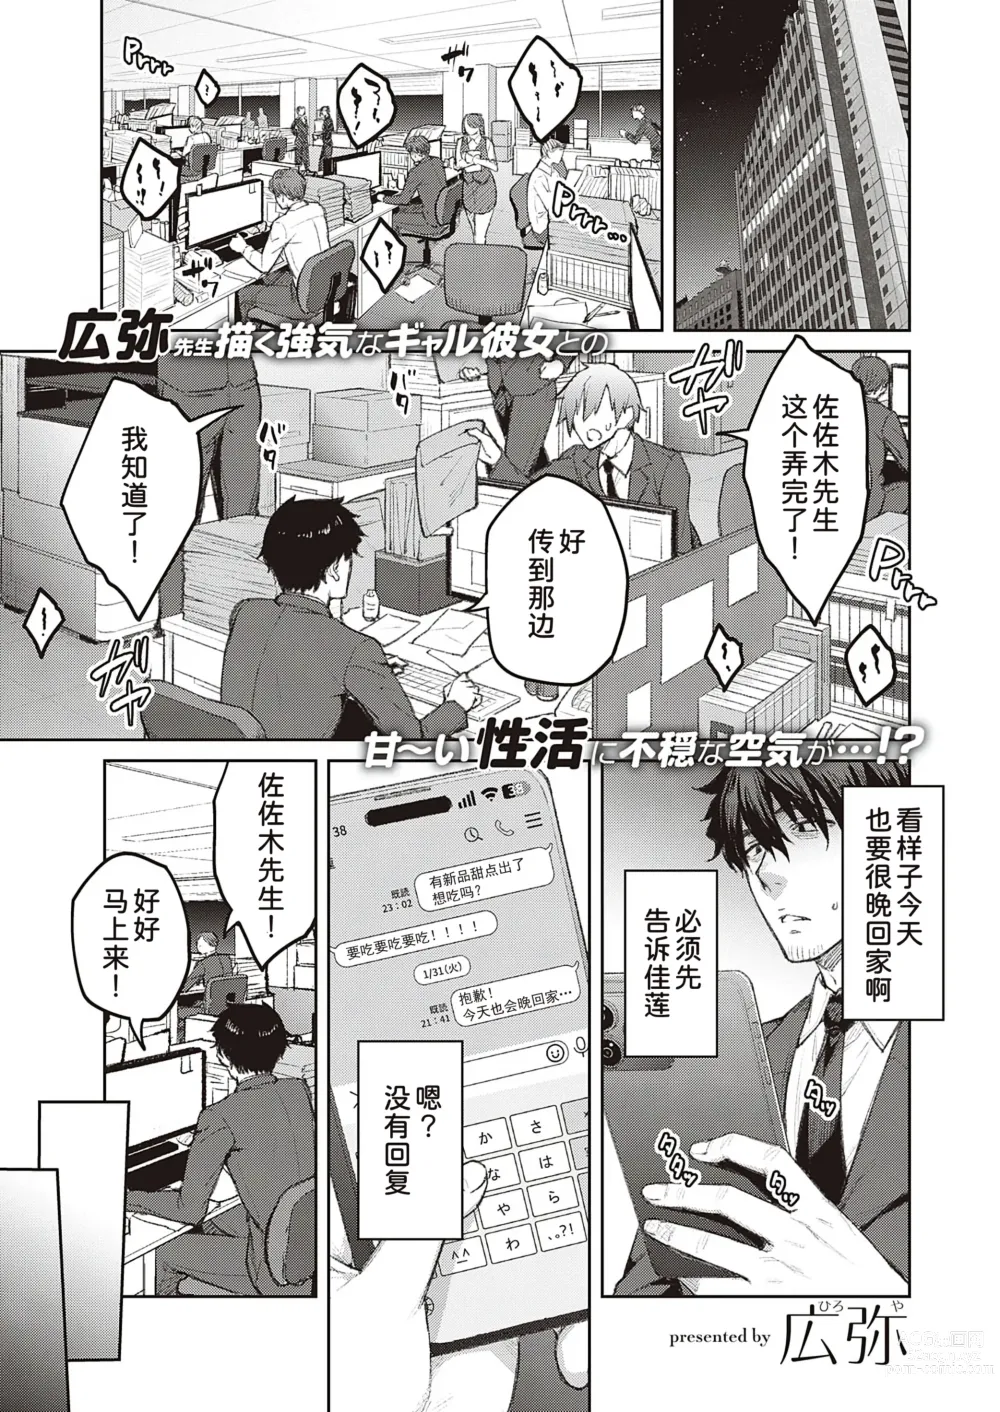 Page 2 of manga Tsugi wa Kou wa Ikanai kara na!3